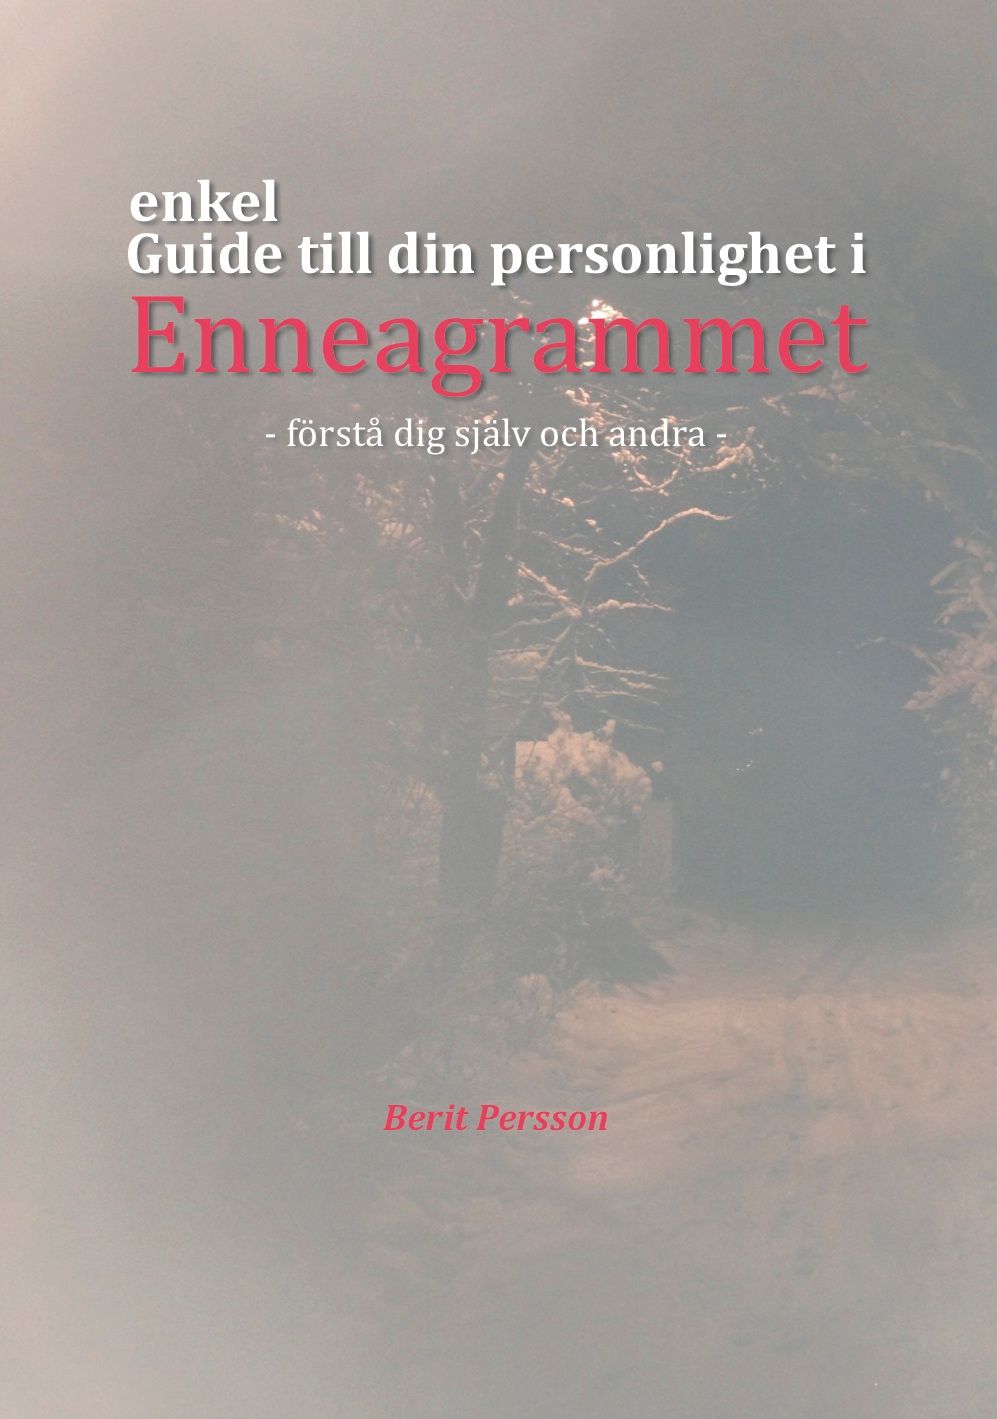 Guide till din personlighet i Enneagrammet, e-bok av Berit Peersson